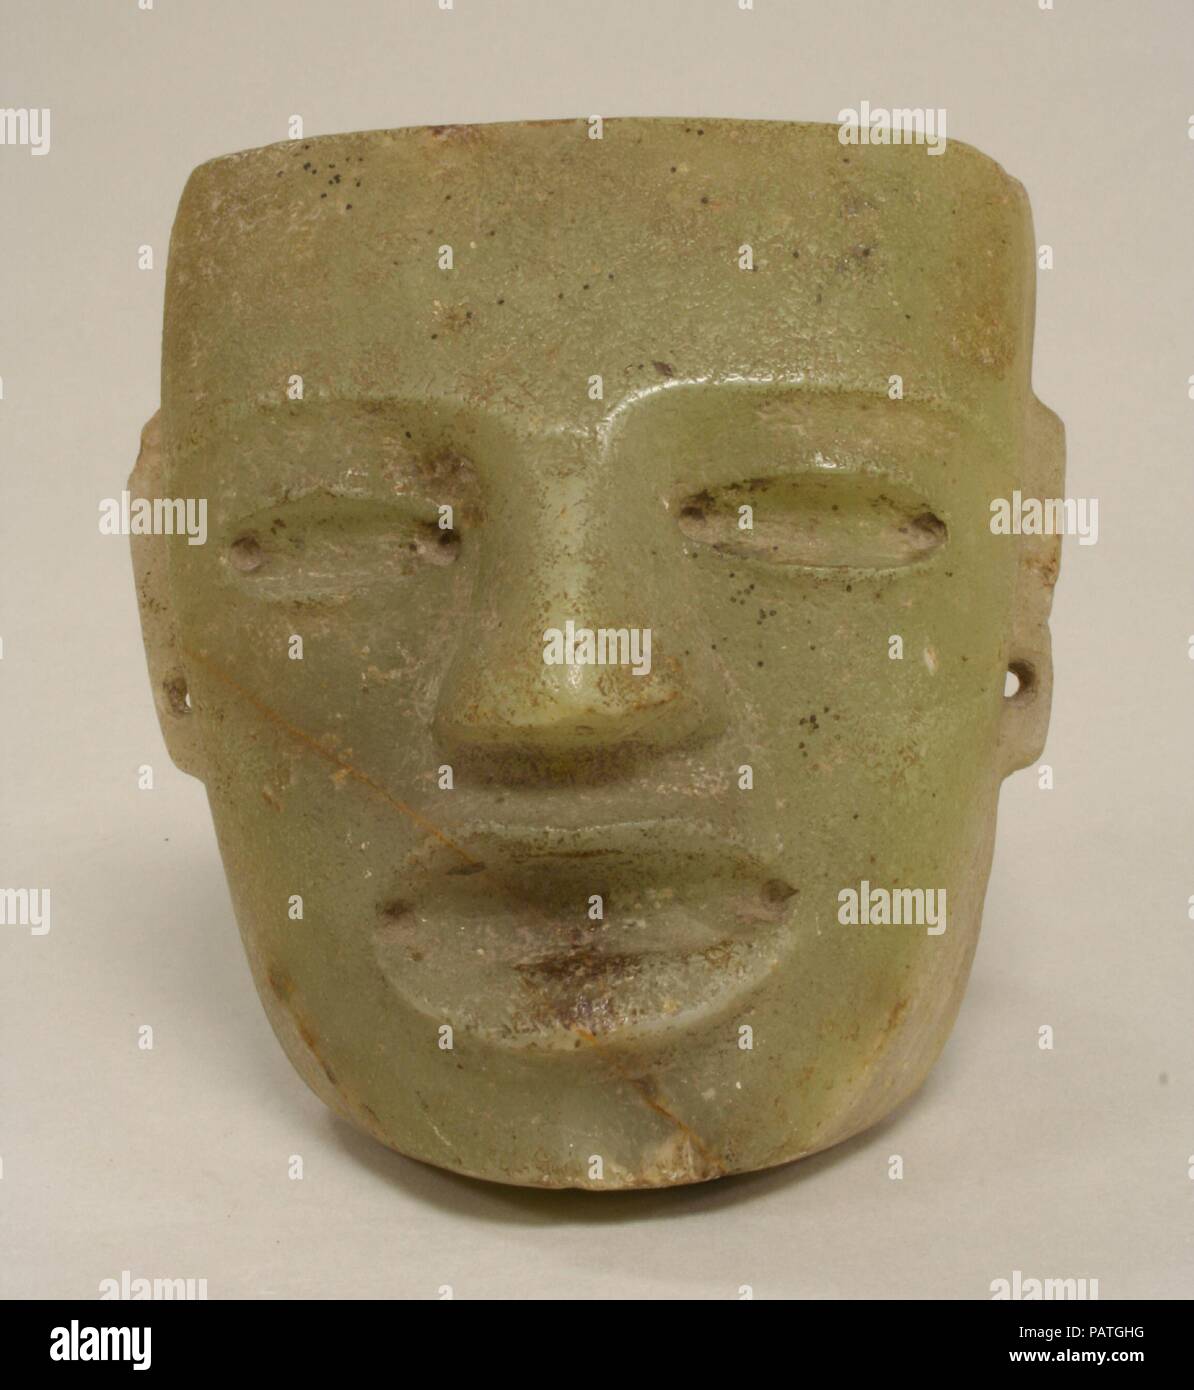 Masque. Culture : Teotihuacan. Dimensions : hors tout : 5 1/4 x 4 3/4 in. (13,34 x 12,07 cm) Autres : 4 3/4 in. (12,07 cm). Date : 4ème-8ème siècle. Il n'y avait pas de tradition du portrait dans le grand centre du Mexique Ville de Teotihuacan, mais représentant le Masque visage humain sont abondants dans le style associé avec le site. Avec son rendu géométriquement front horizontal, nez triangulaire, ovale et la bouche et les yeux, ce masque représente le type du visage idéalisé qui semble fonctionner comme un symbole, comme pour d'autres motifs standard présents dans l'art de Teotihuacan. Le creux des yeux et la bouche s Banque D'Images